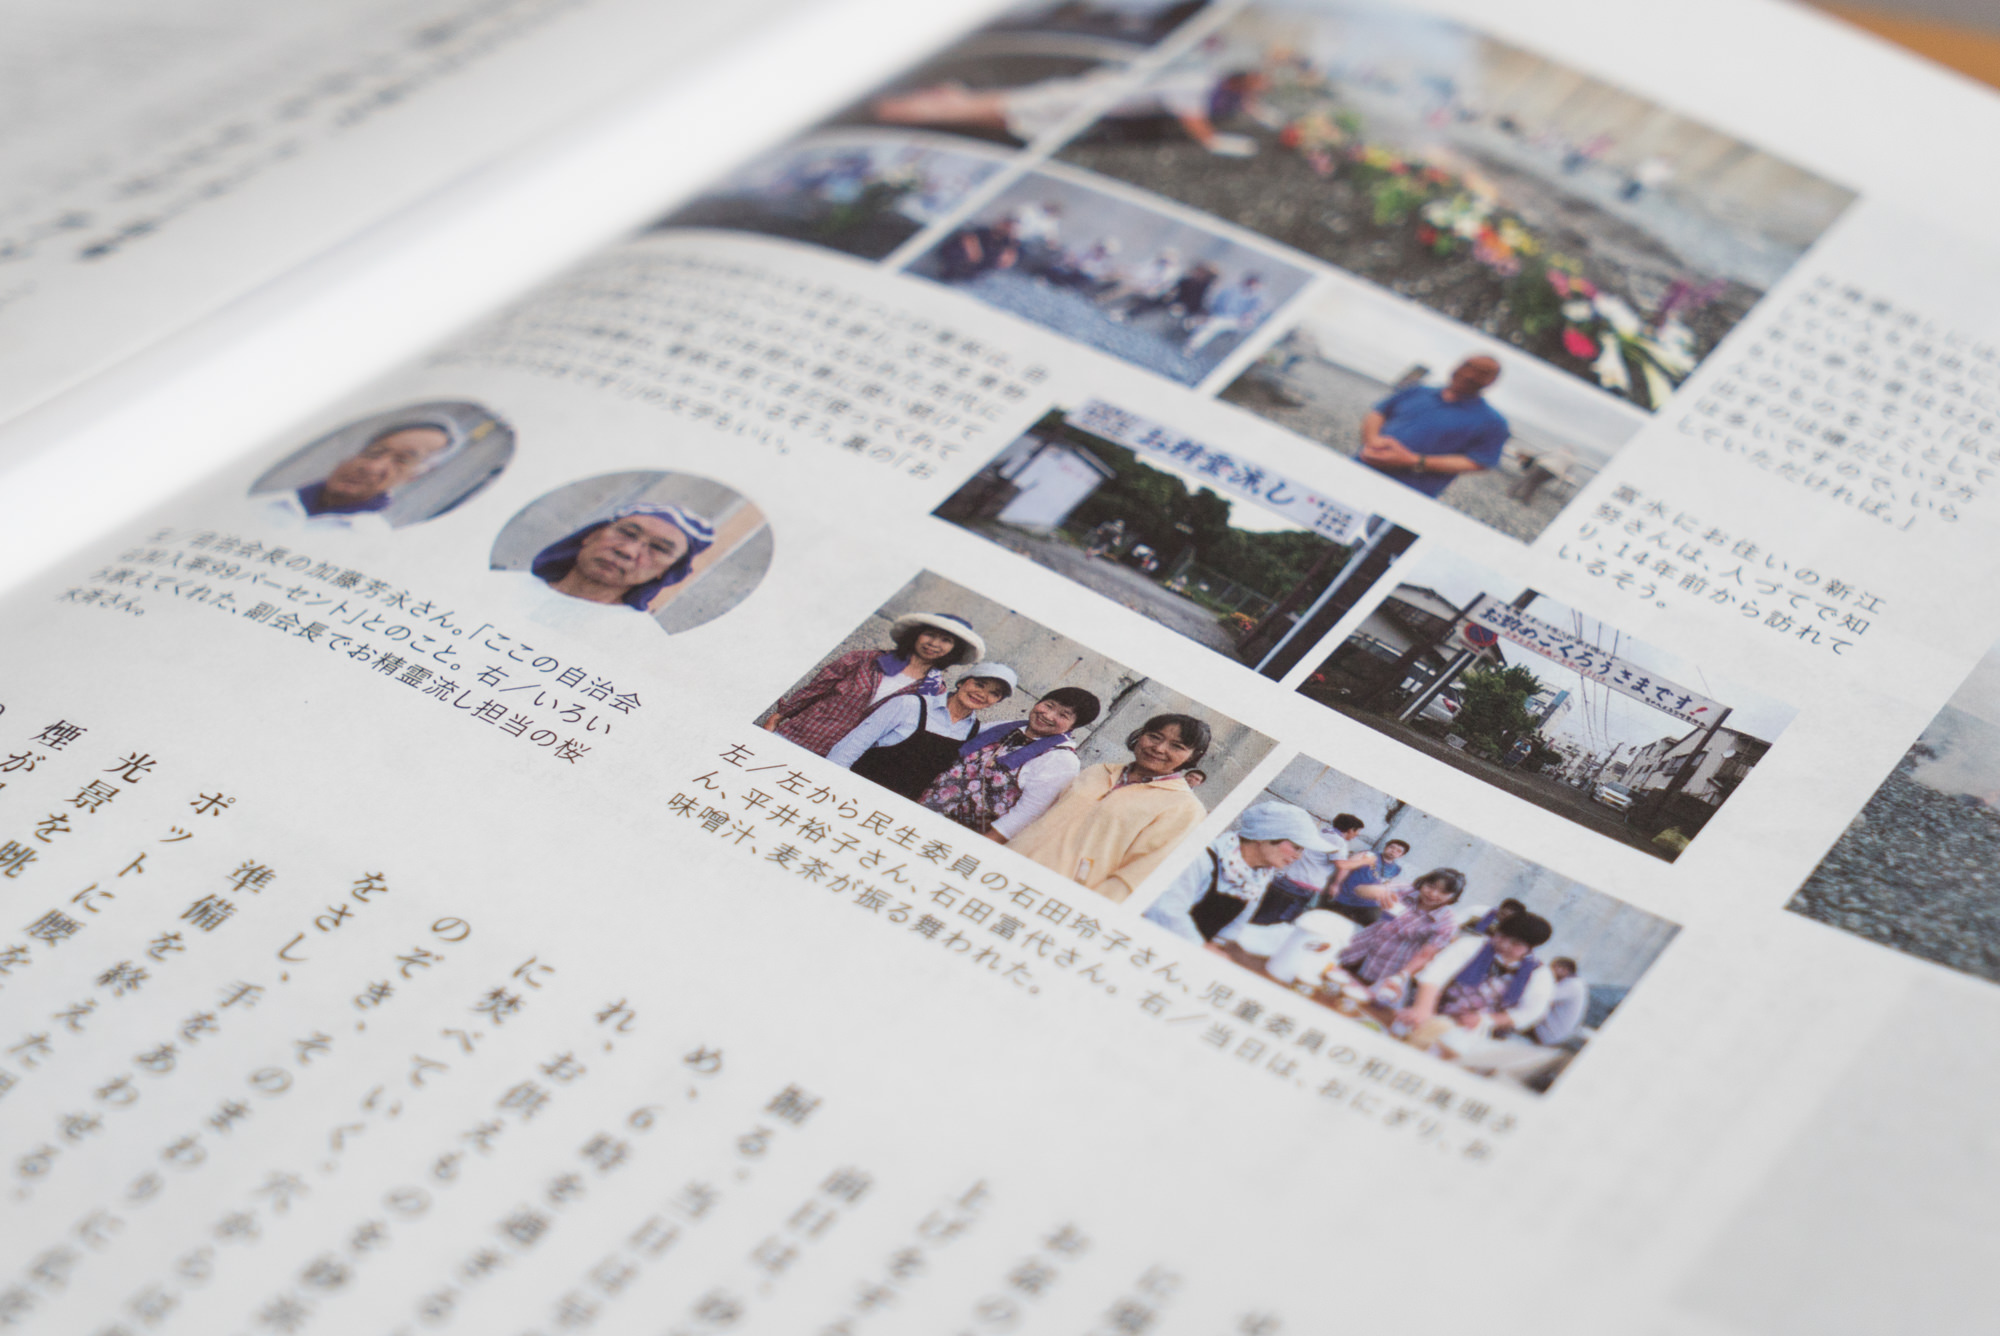 デザインこねこさんが、季刊発行されている小田原回覧板系フリーマガジン「おとなりさん」vol.10